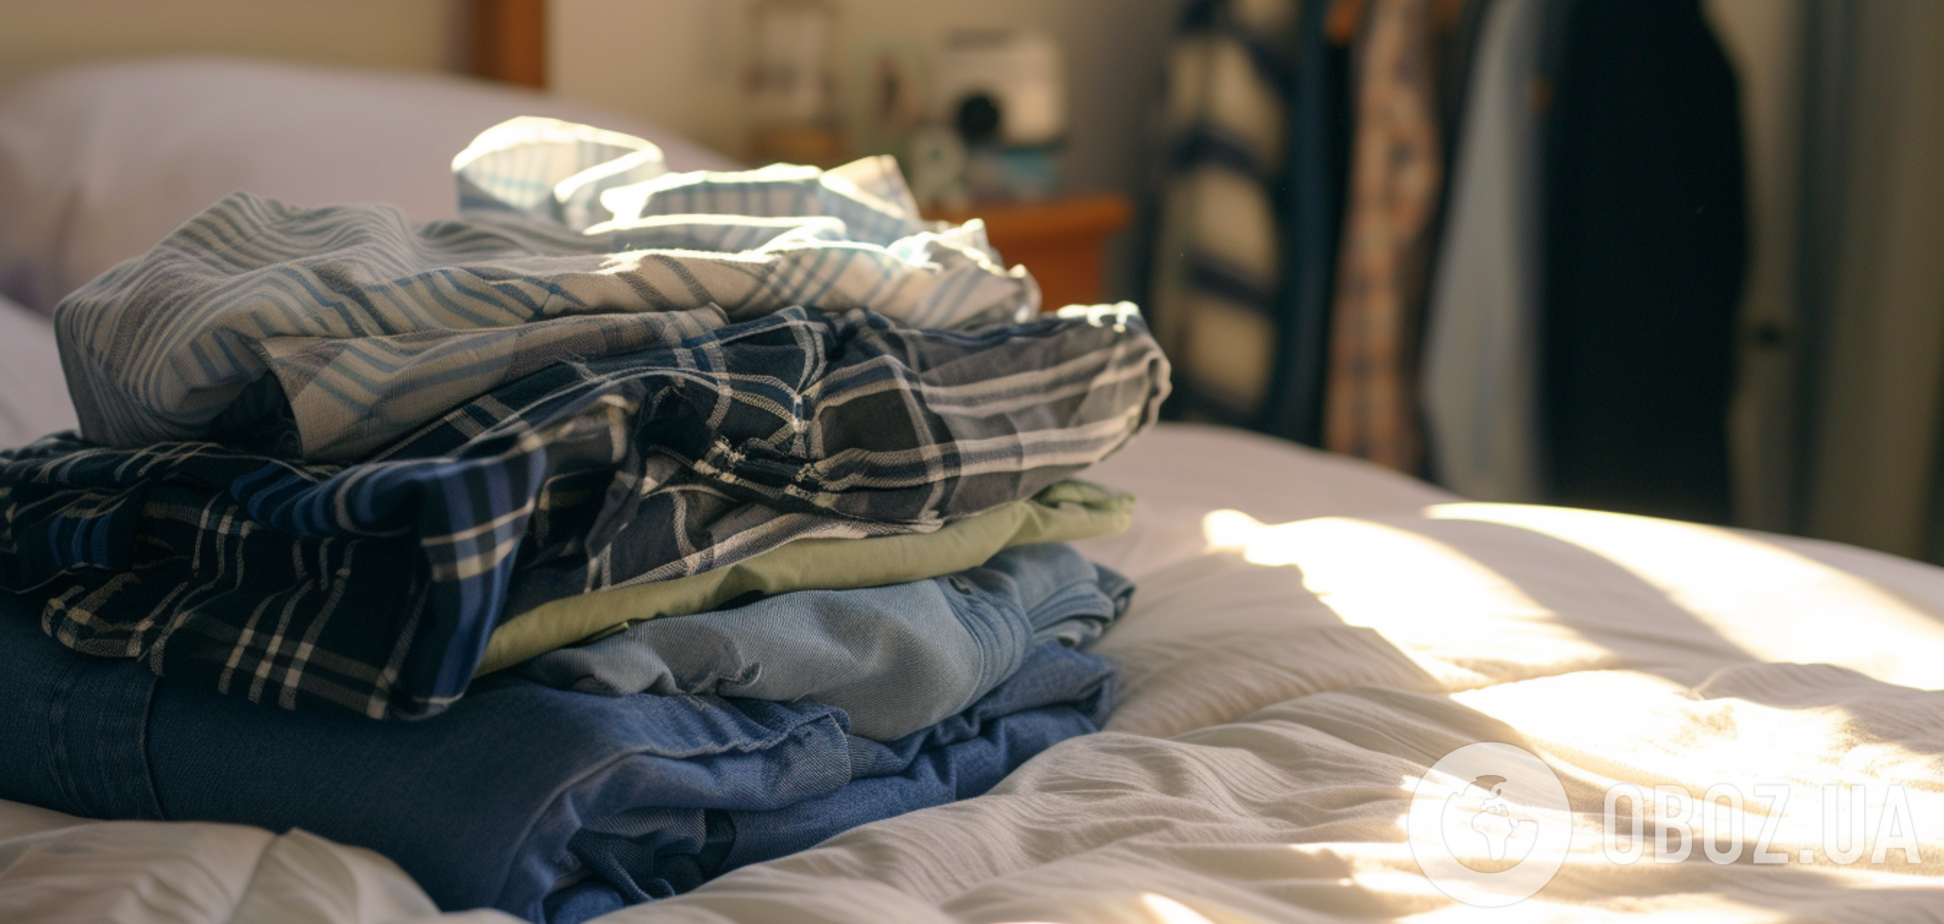 Как правильно и быстро сушить одежду дома зимой: этот лайфхак изменит все и не будет стоить ни копейки